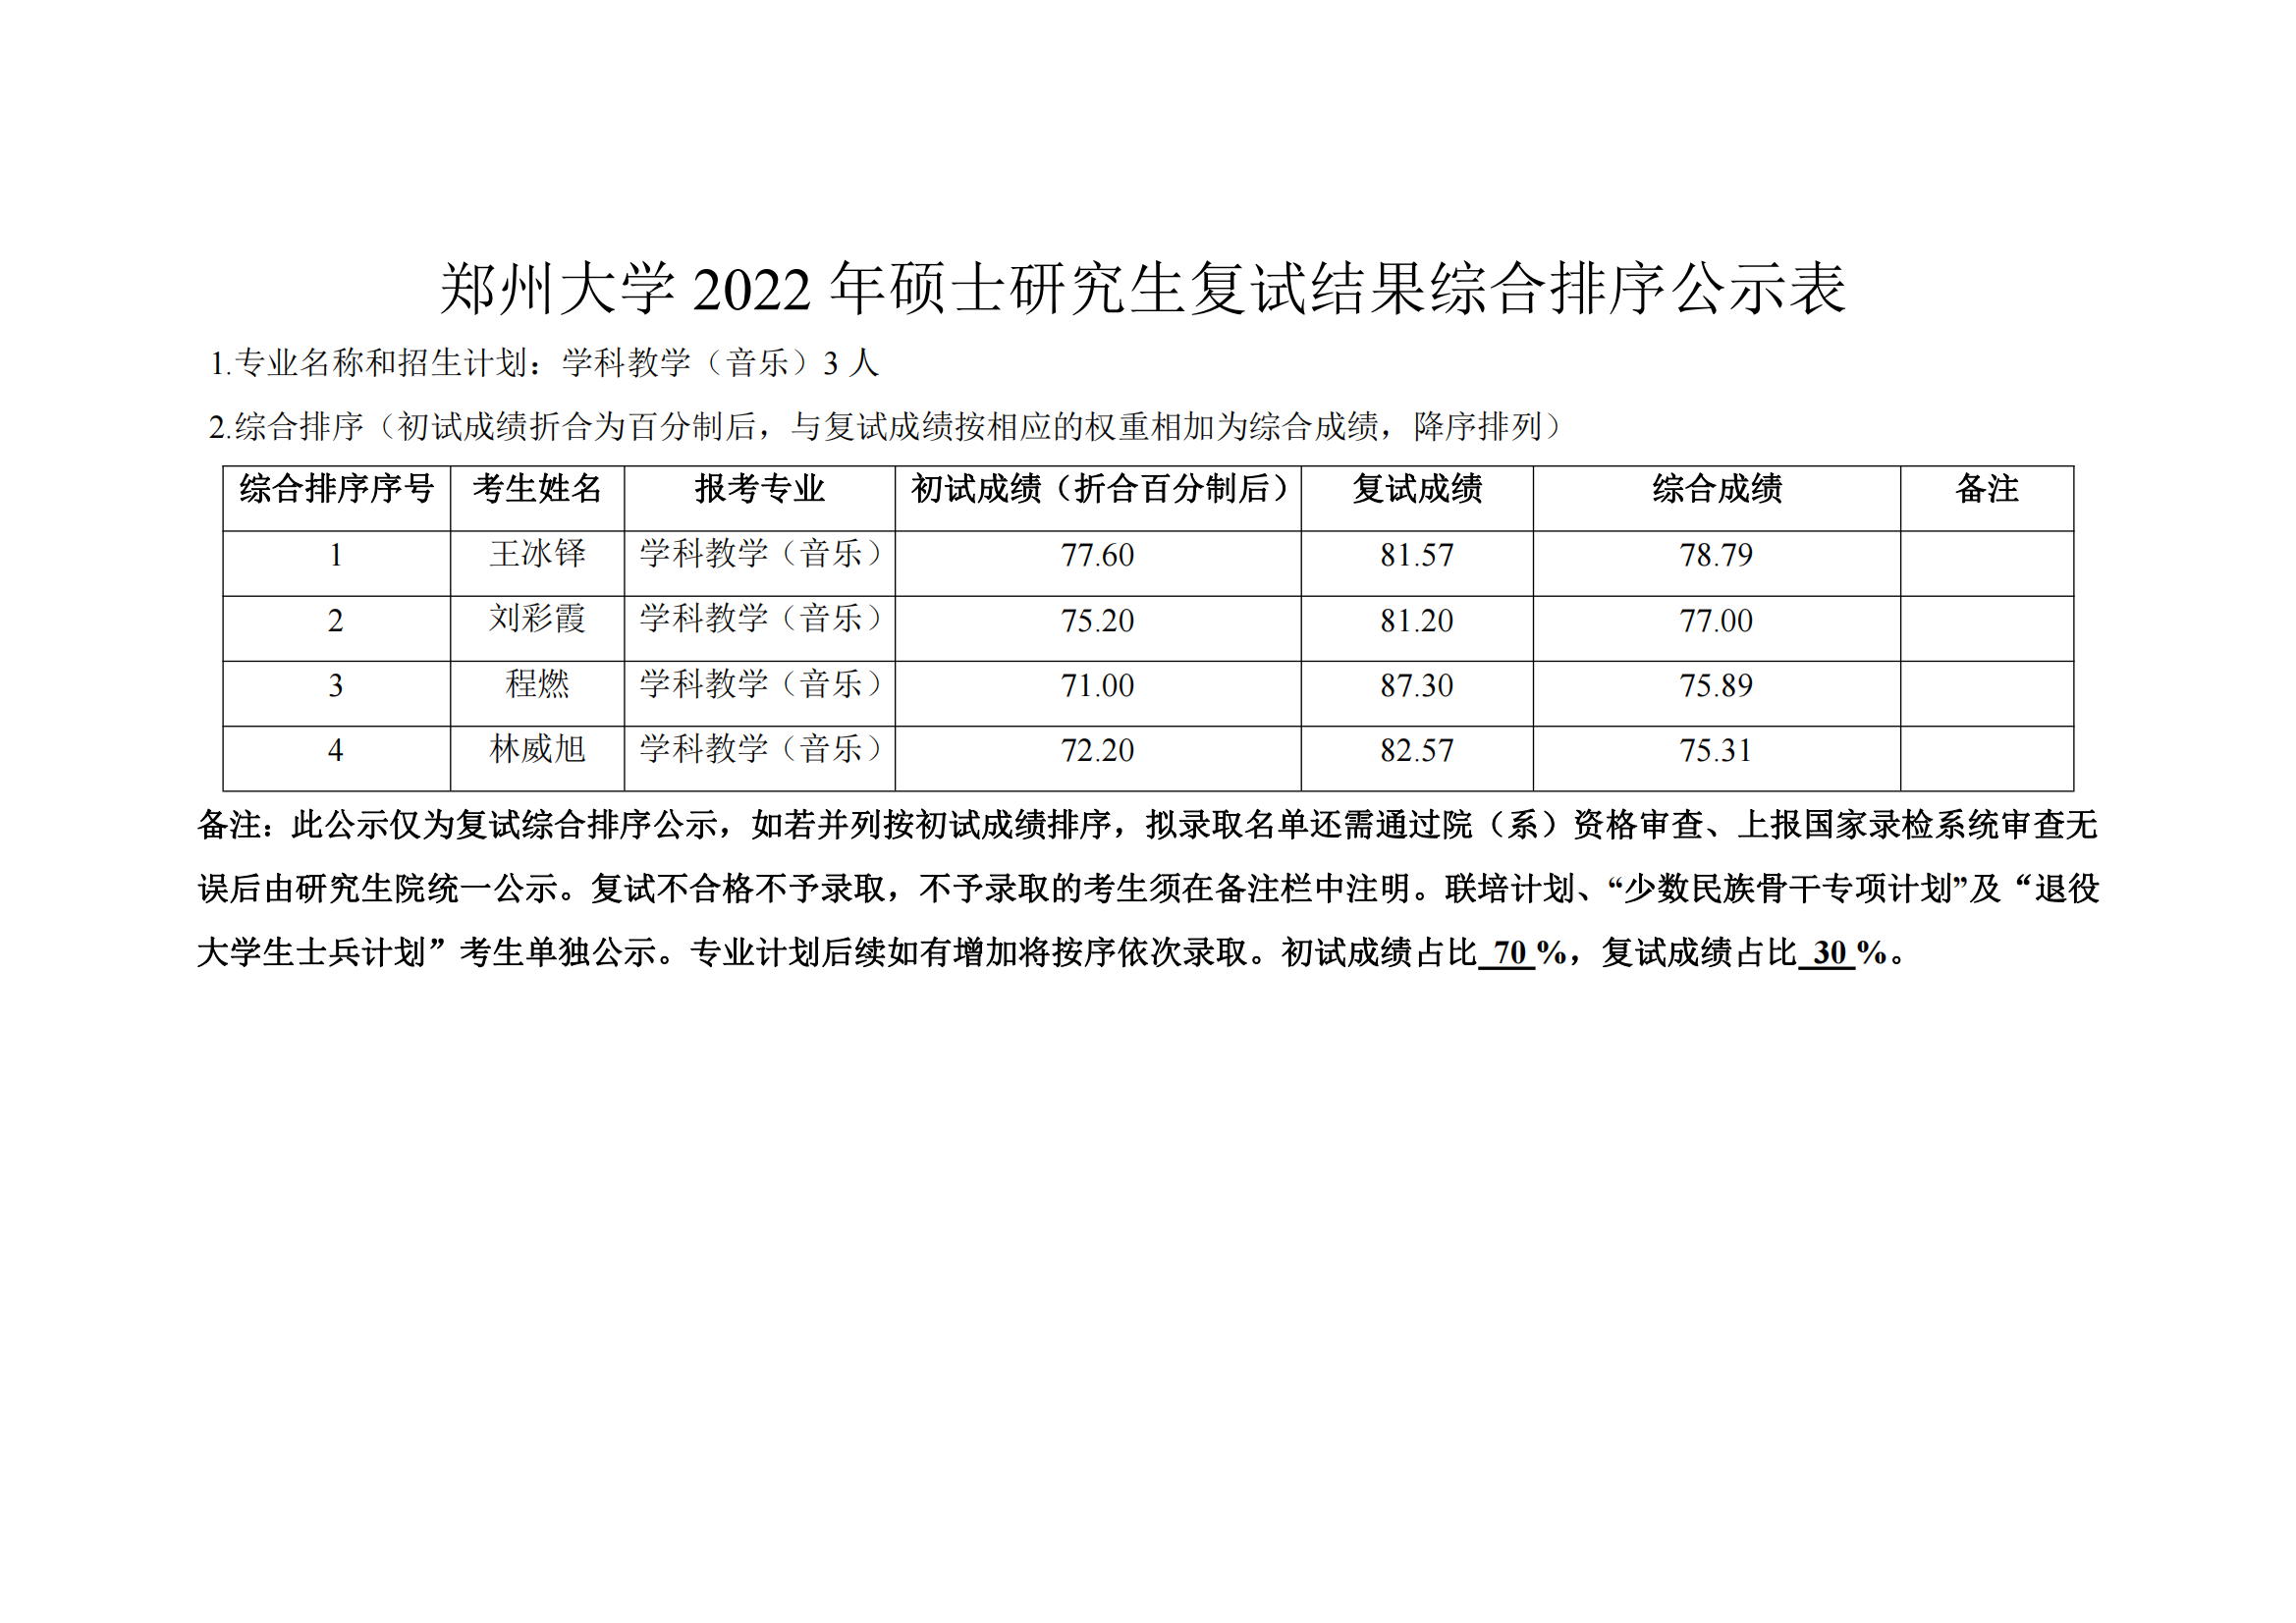 郑州大学教育学院2022年硕士研究生复试结果综合排序公示表 第三批_00.png